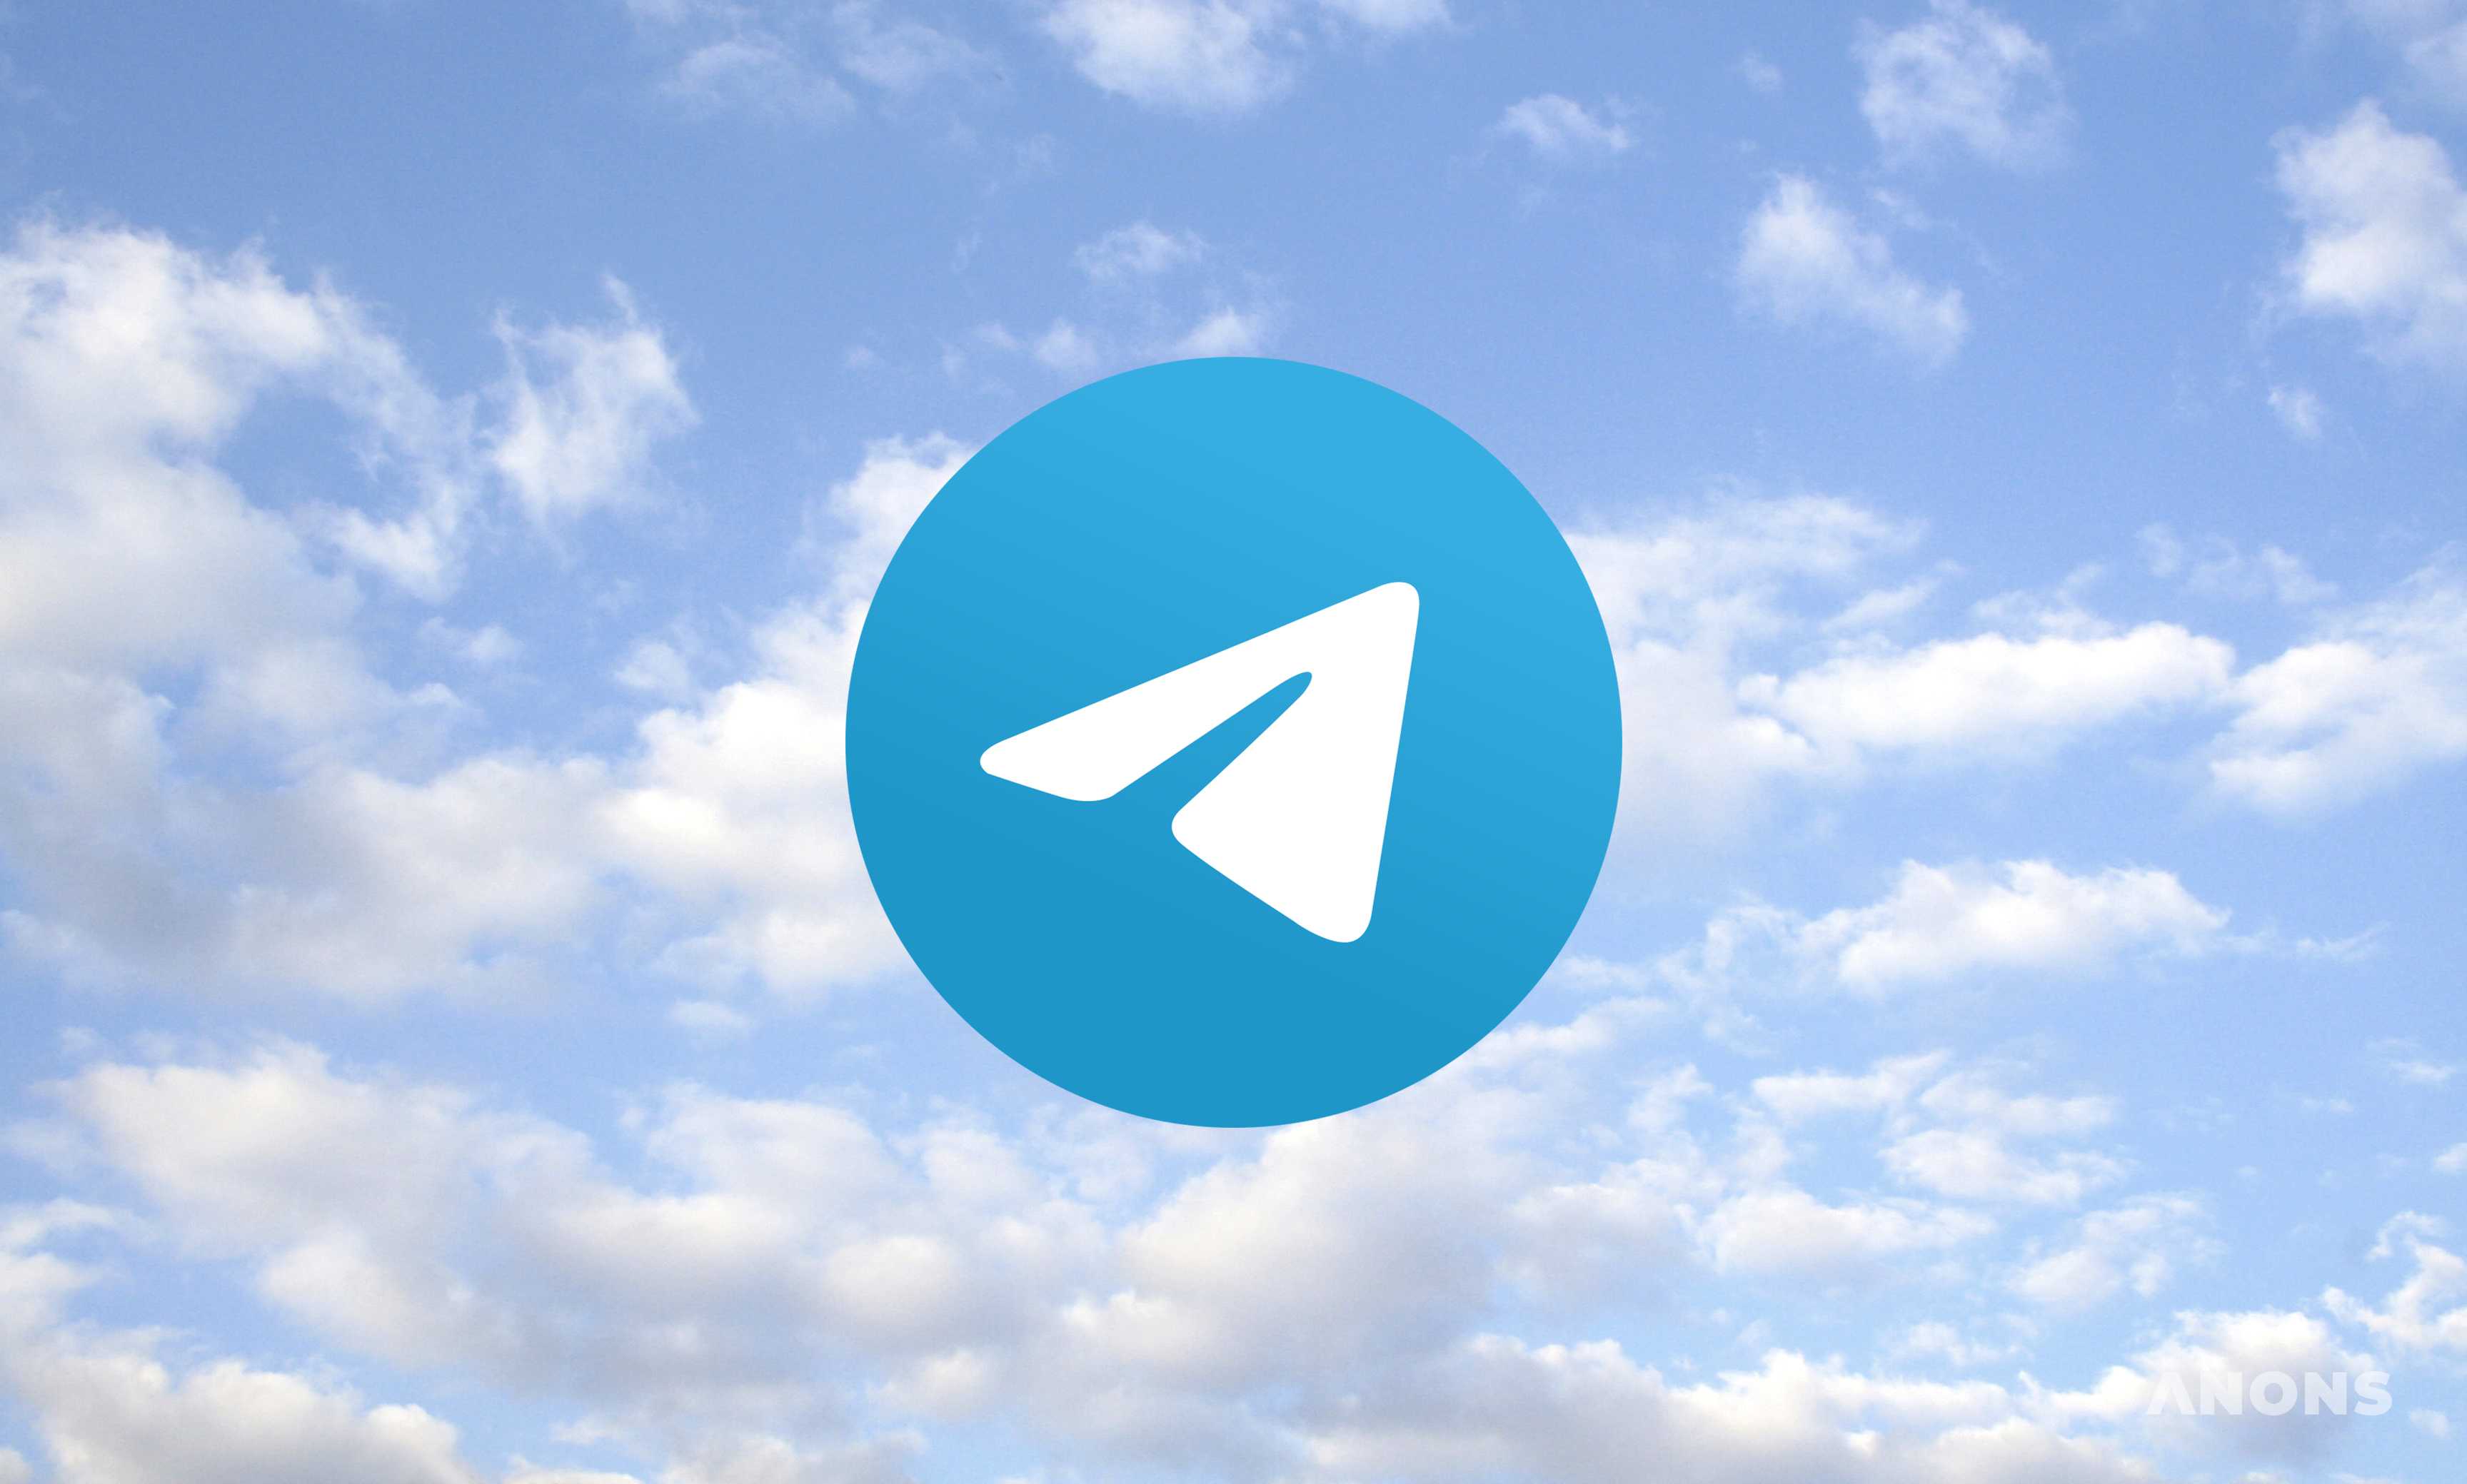 Telegram на территории России разблокировали спустя два года